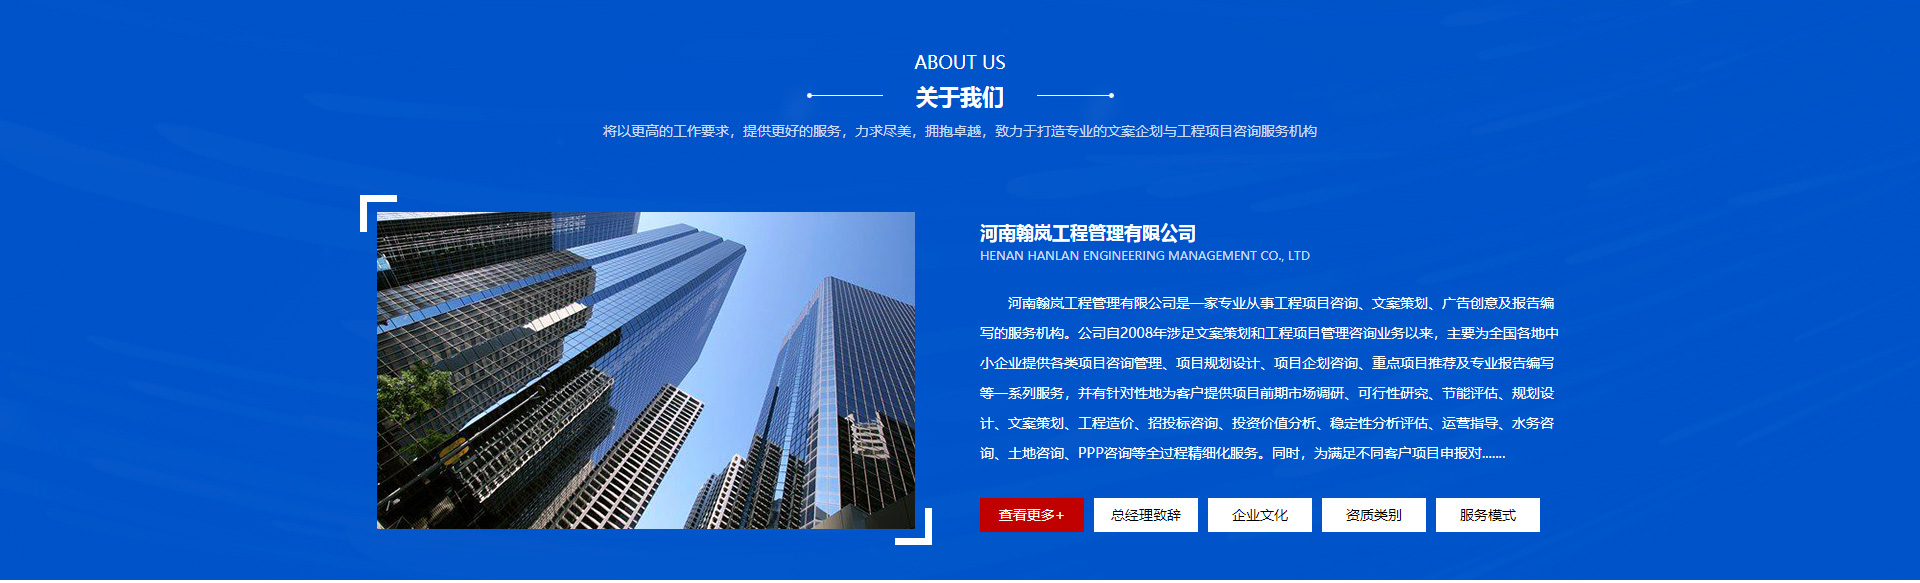 郑州网站设计制作公司